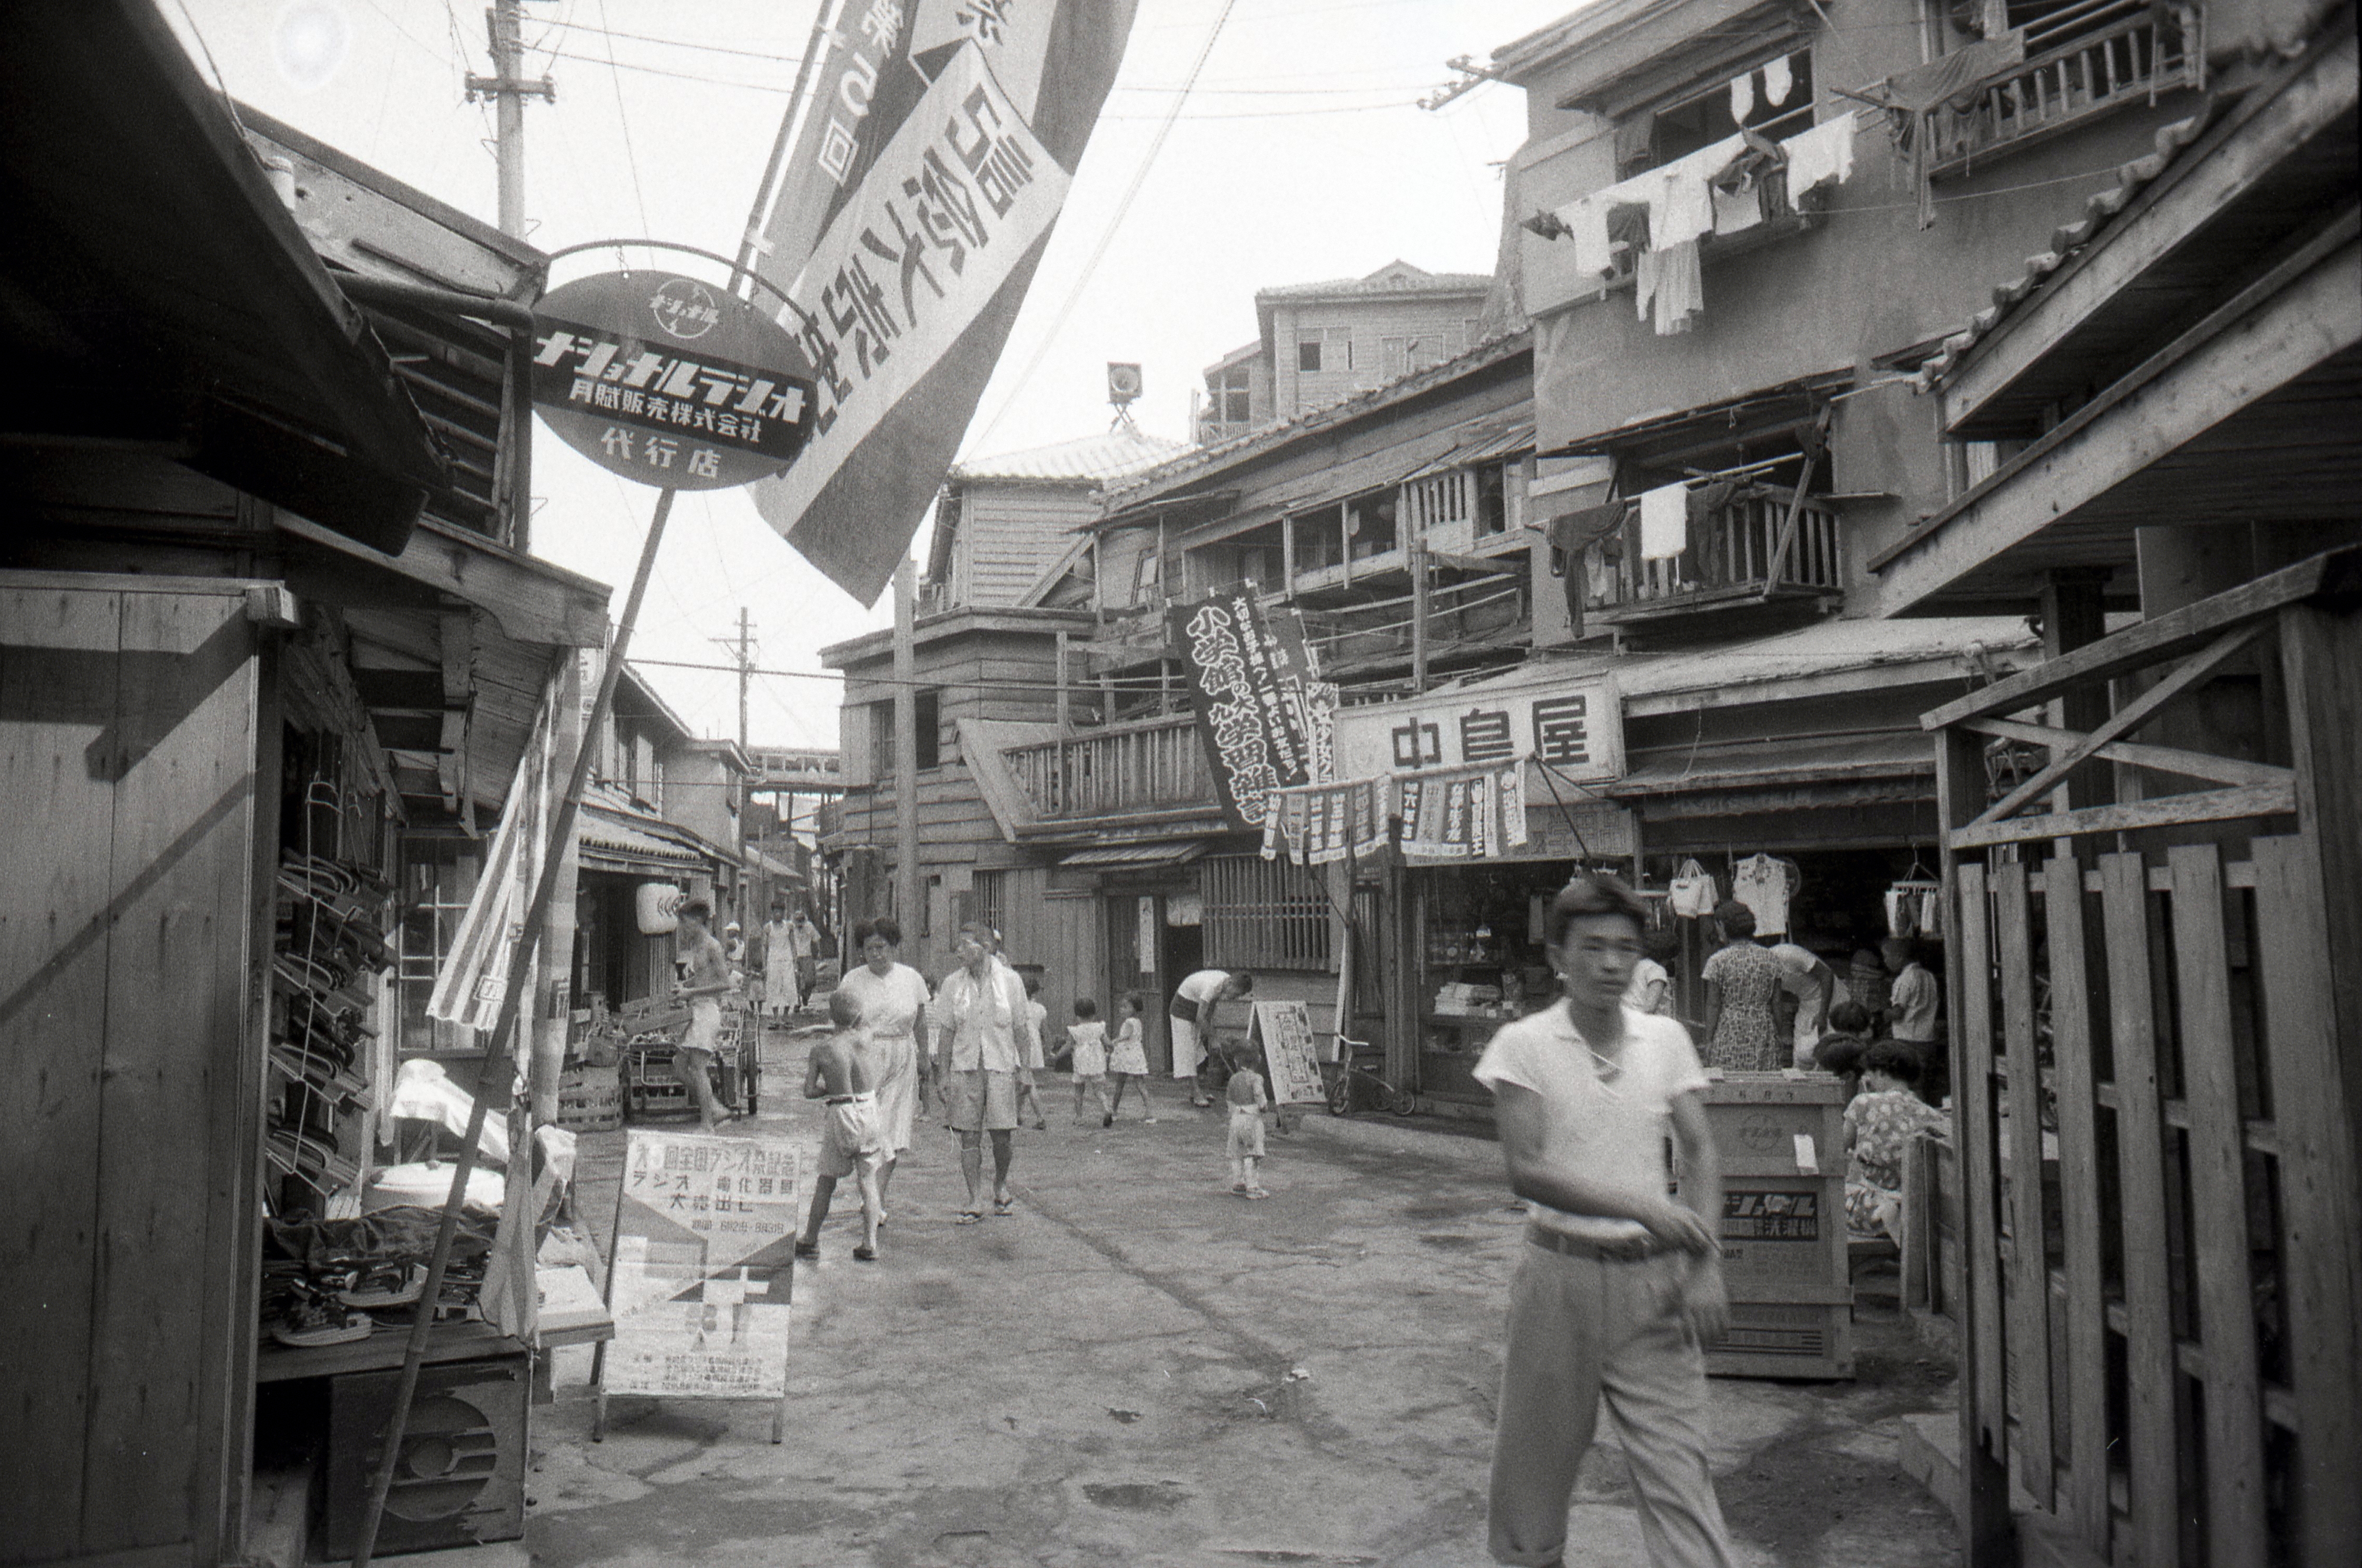 Menschen gehen am 12. August 1956 in Takashima, Nagasaki, durch eine Einkaufsstraße in Hashima